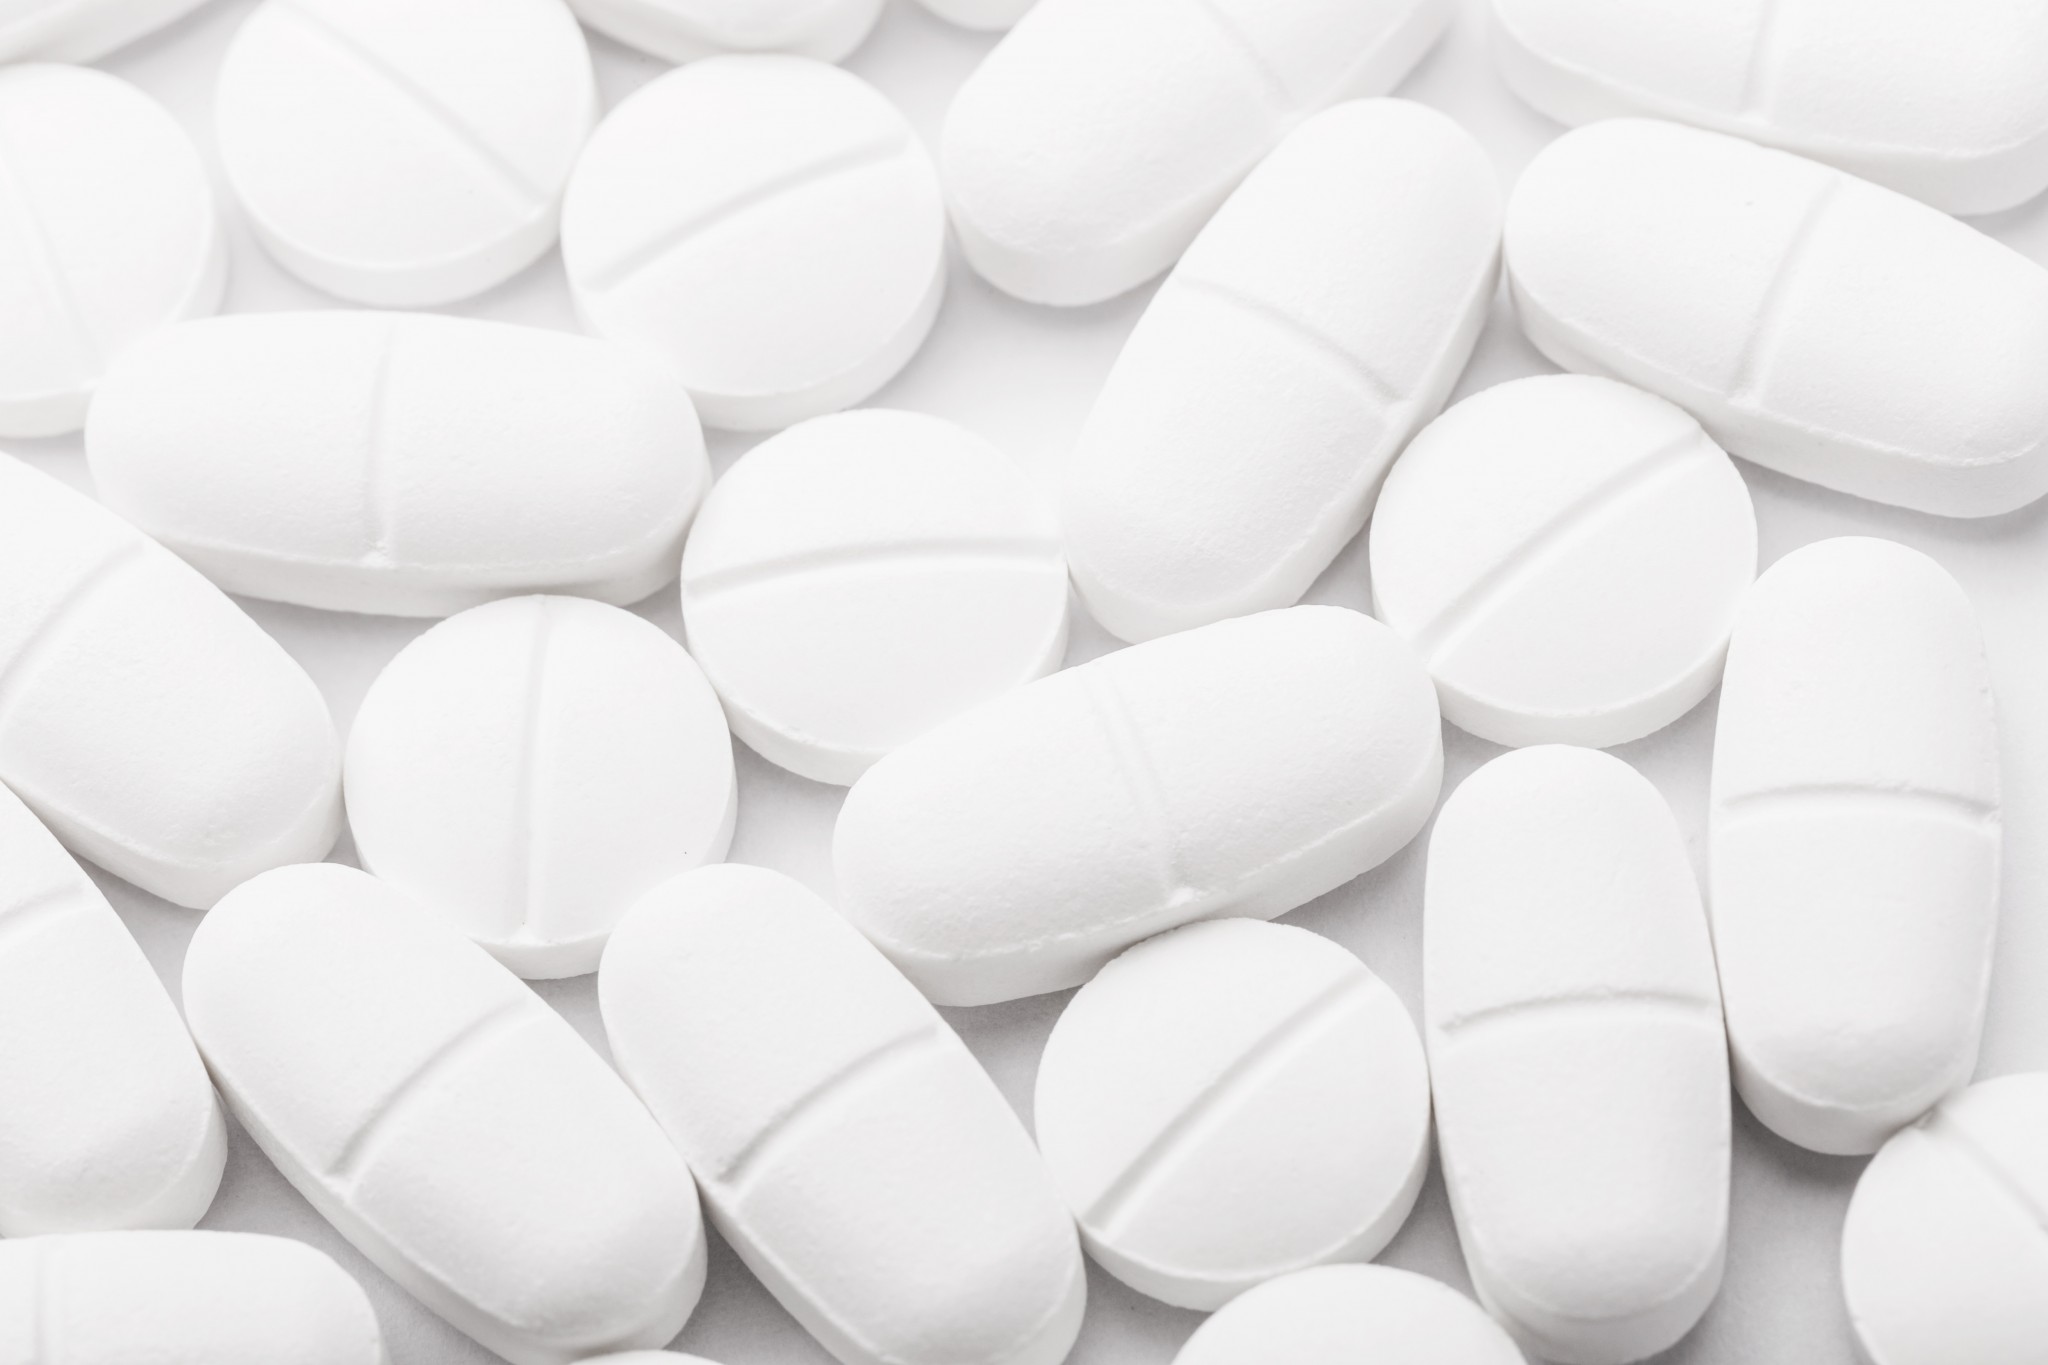 Metformin tablets